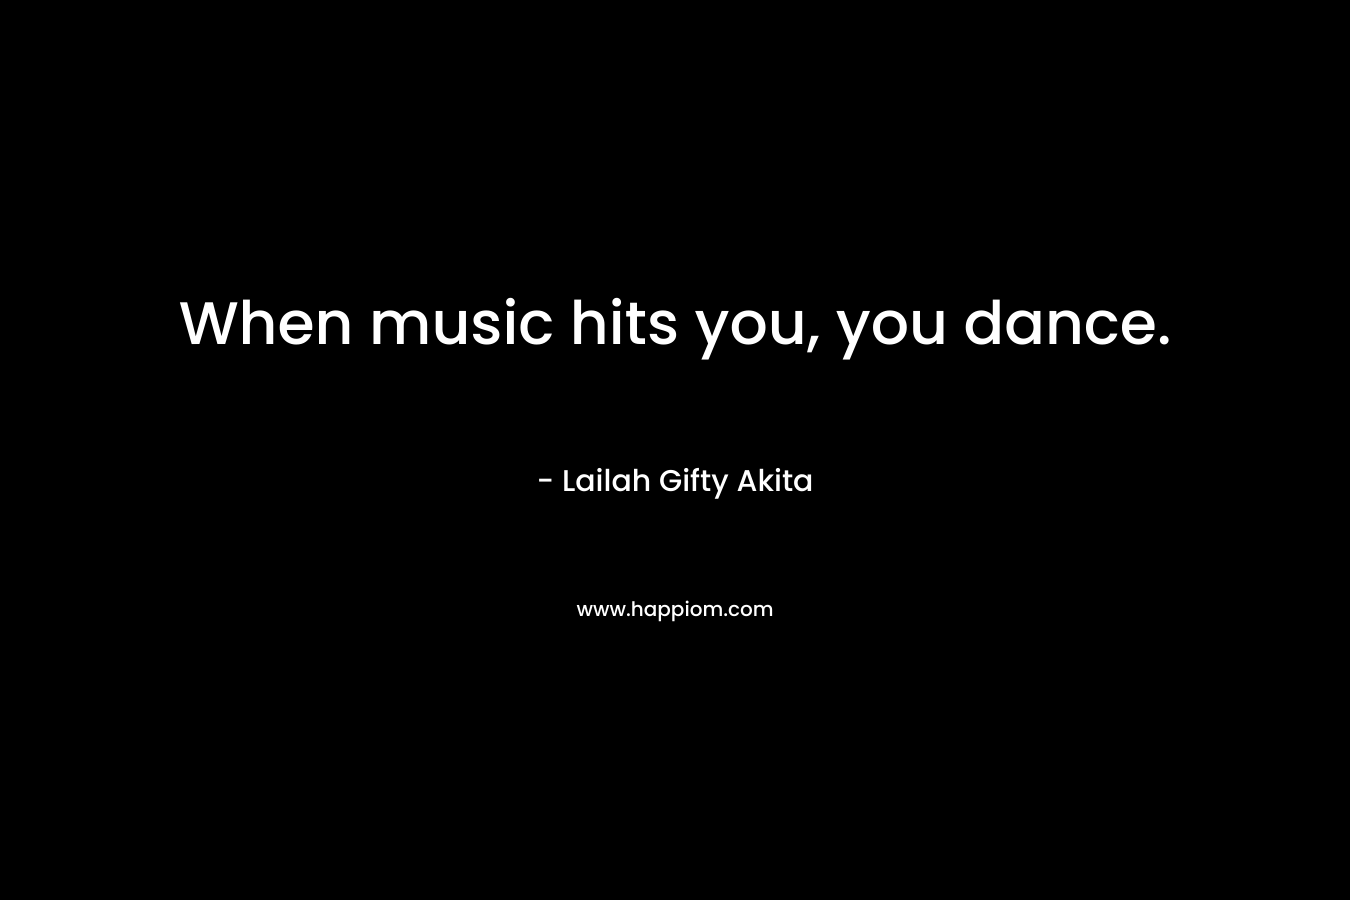 When music hits you, you dance.